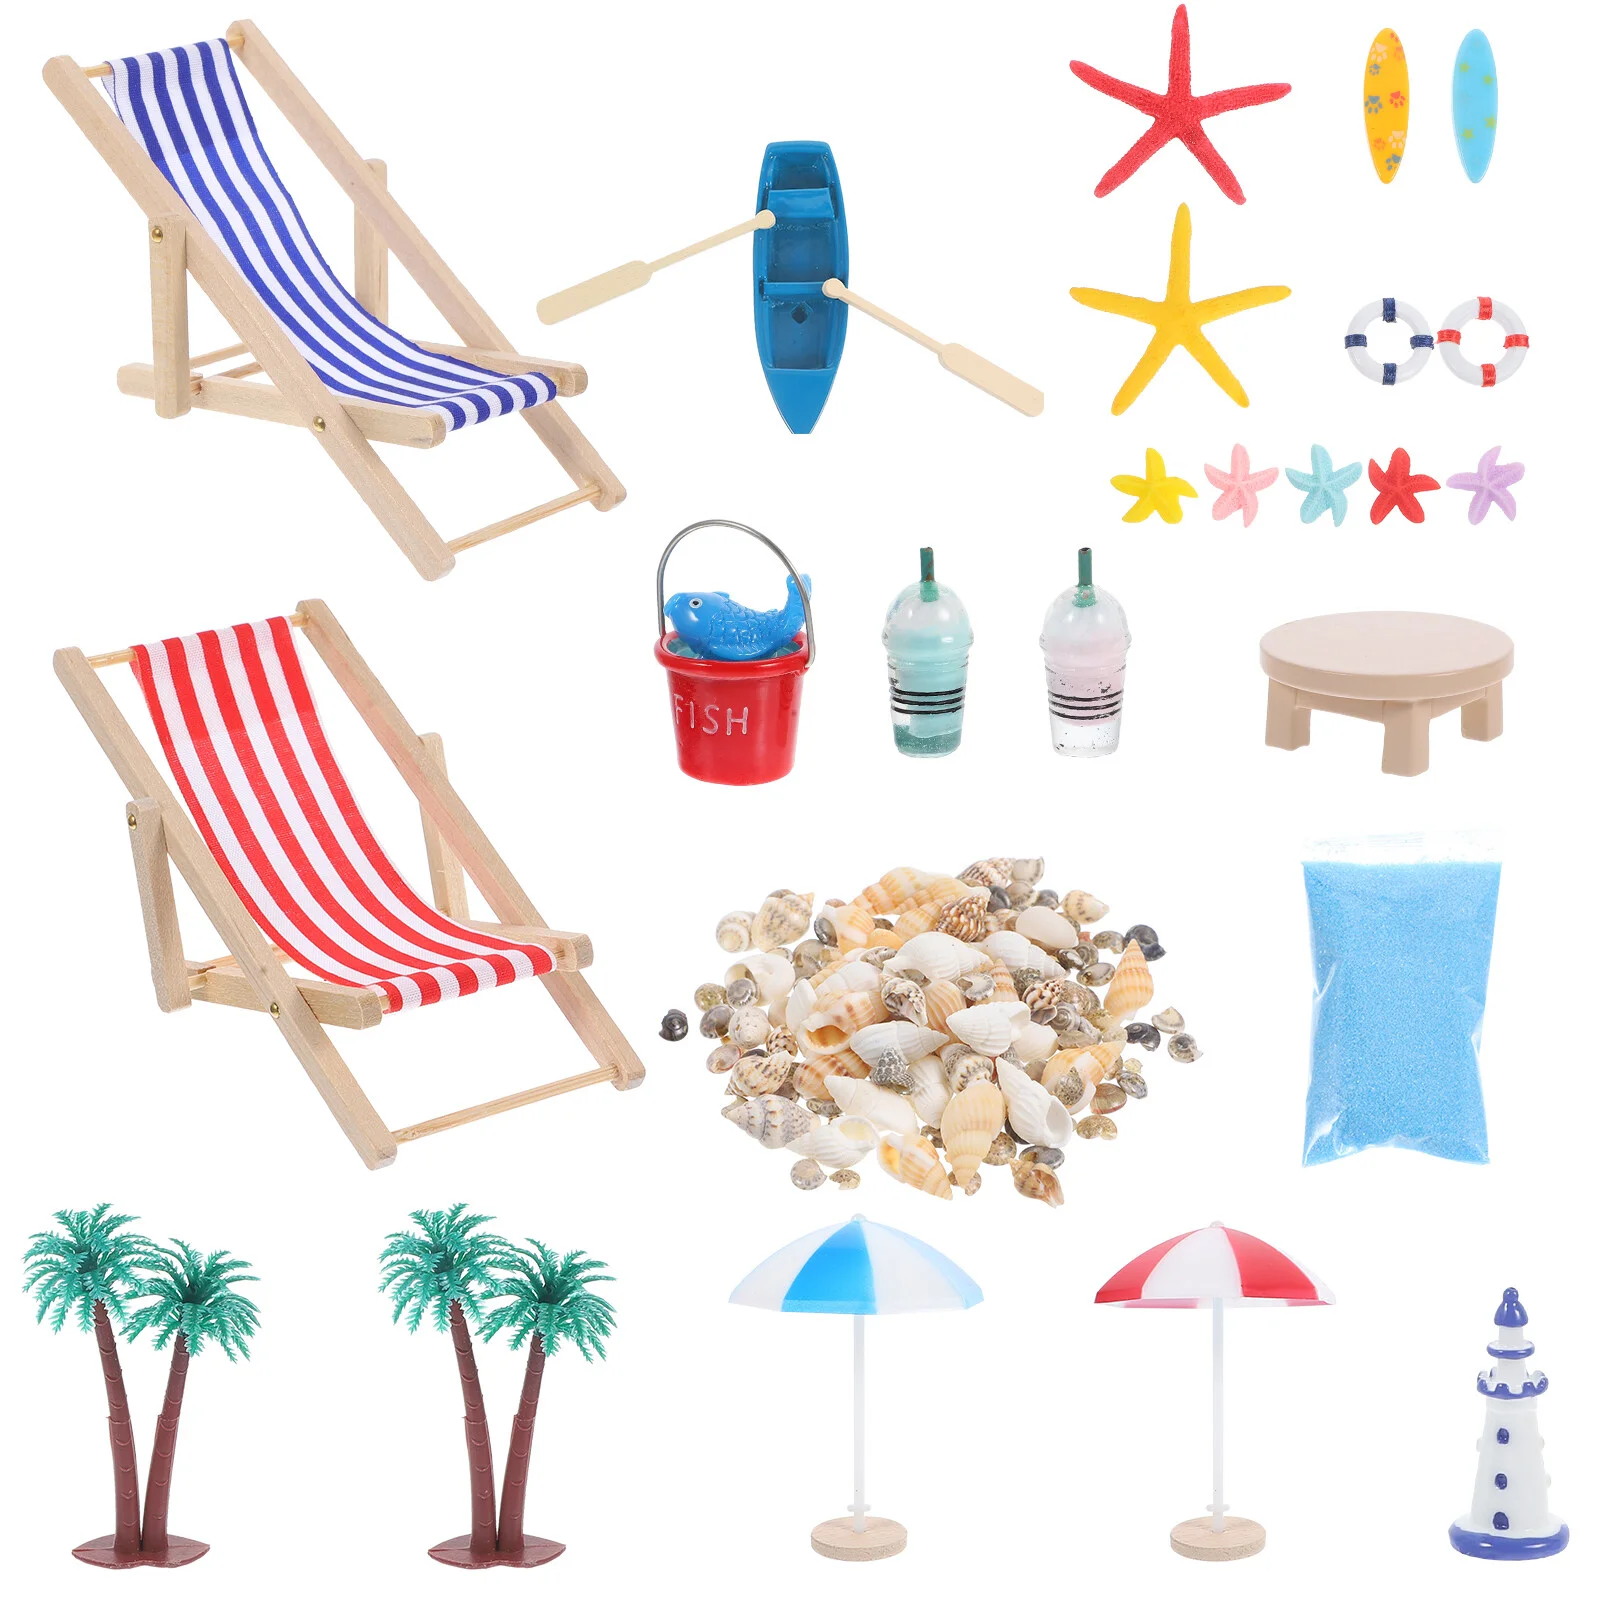 

Аксессуары для пляжного мини-костюма, подставка из ракушки, украшение в летнем стиле, миниатюрный пейзаж, декор для детских сцен